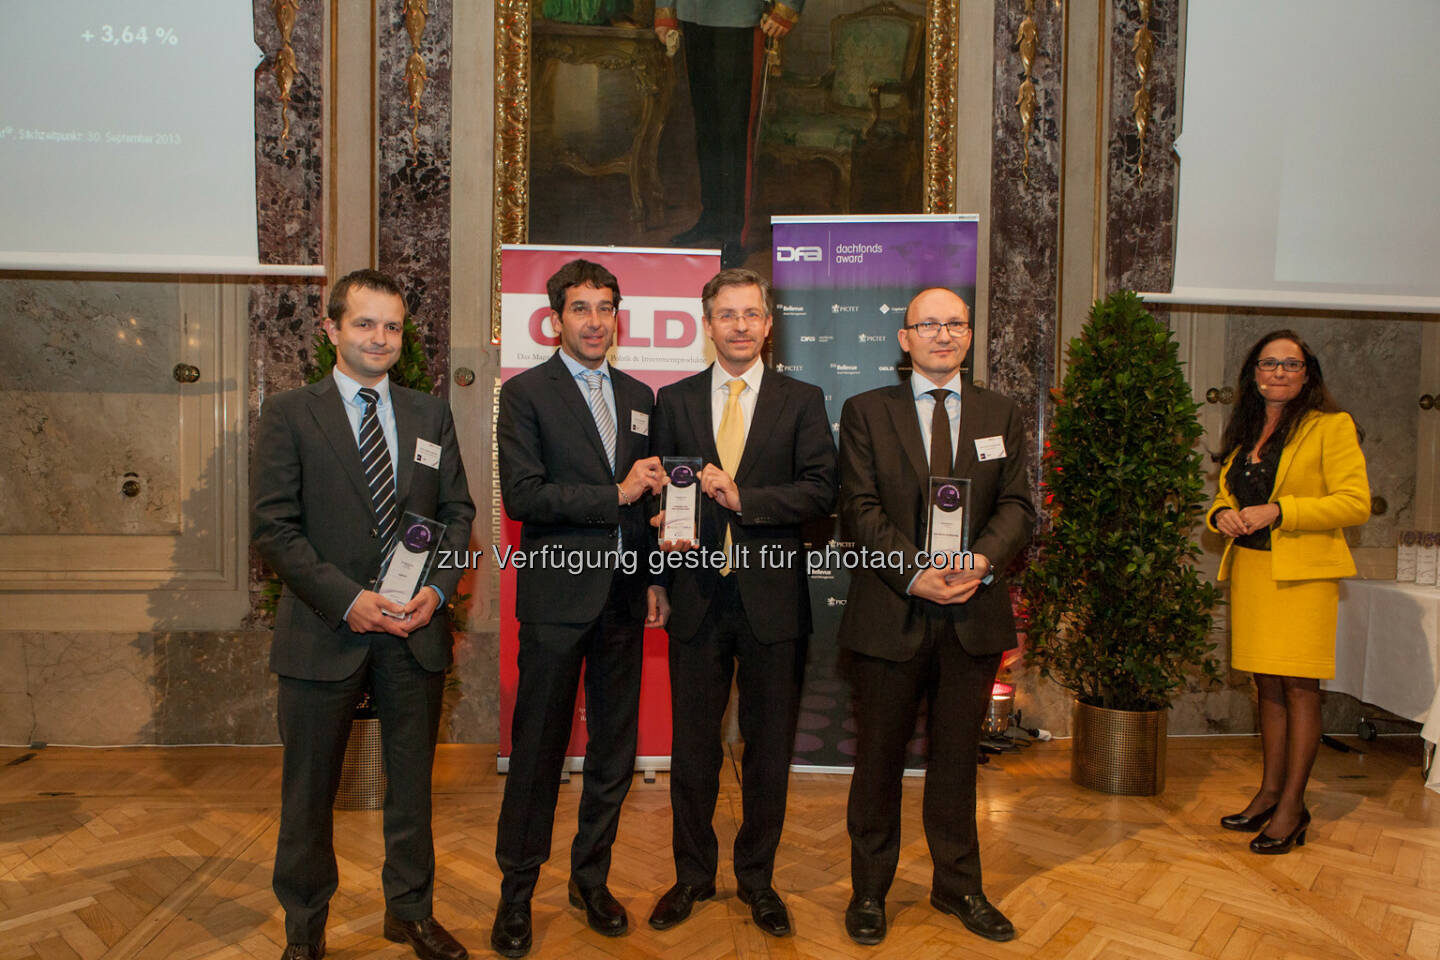 Dachfonds Award 2013/Geld Magazin